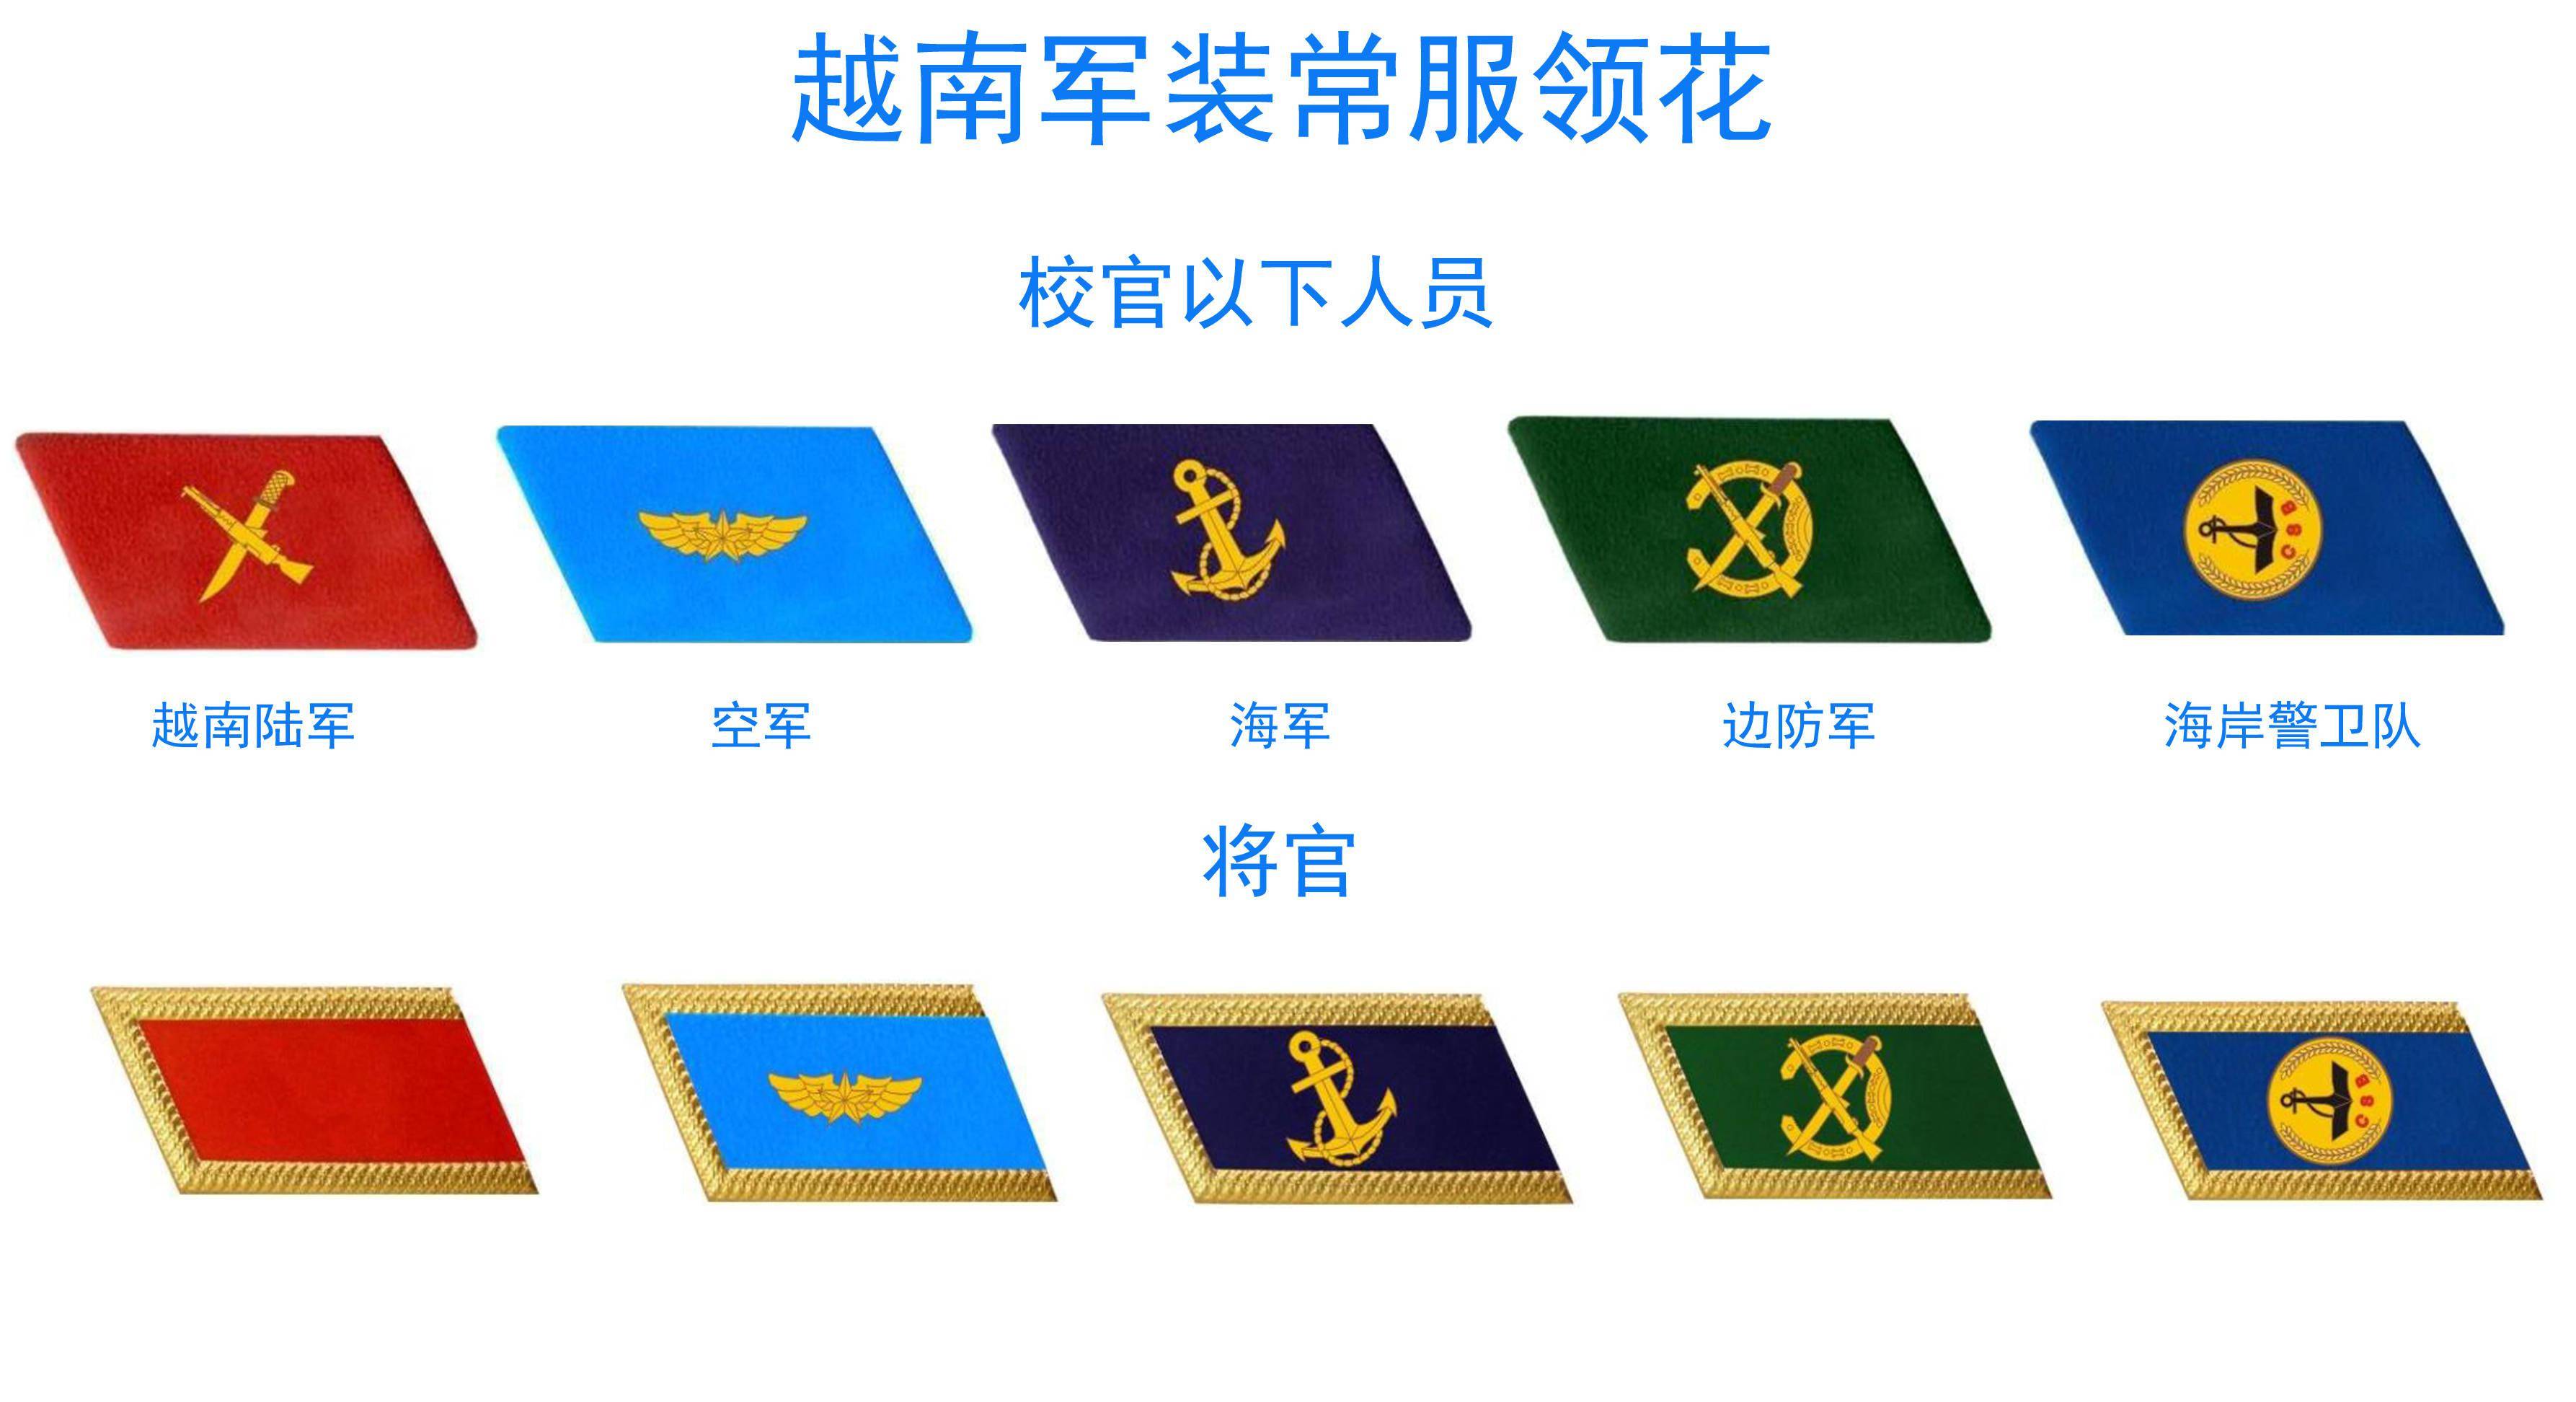 总体上讲,越南士兵的常服军衔采用的是肩章军衔标志,领章在常服上只是